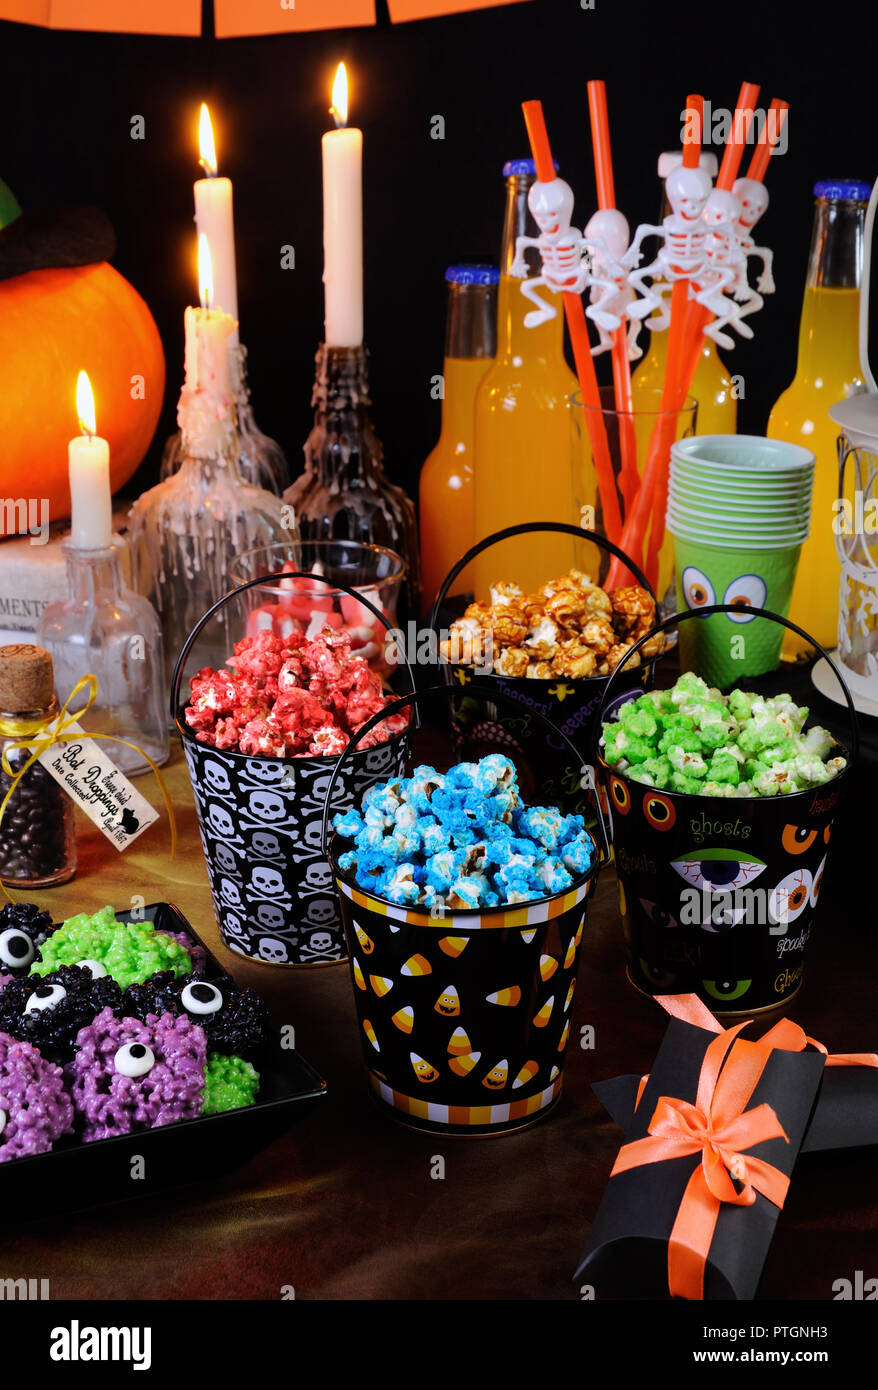 Sweet colored popcorn on the table among Halloween sweetness. Stock Photo